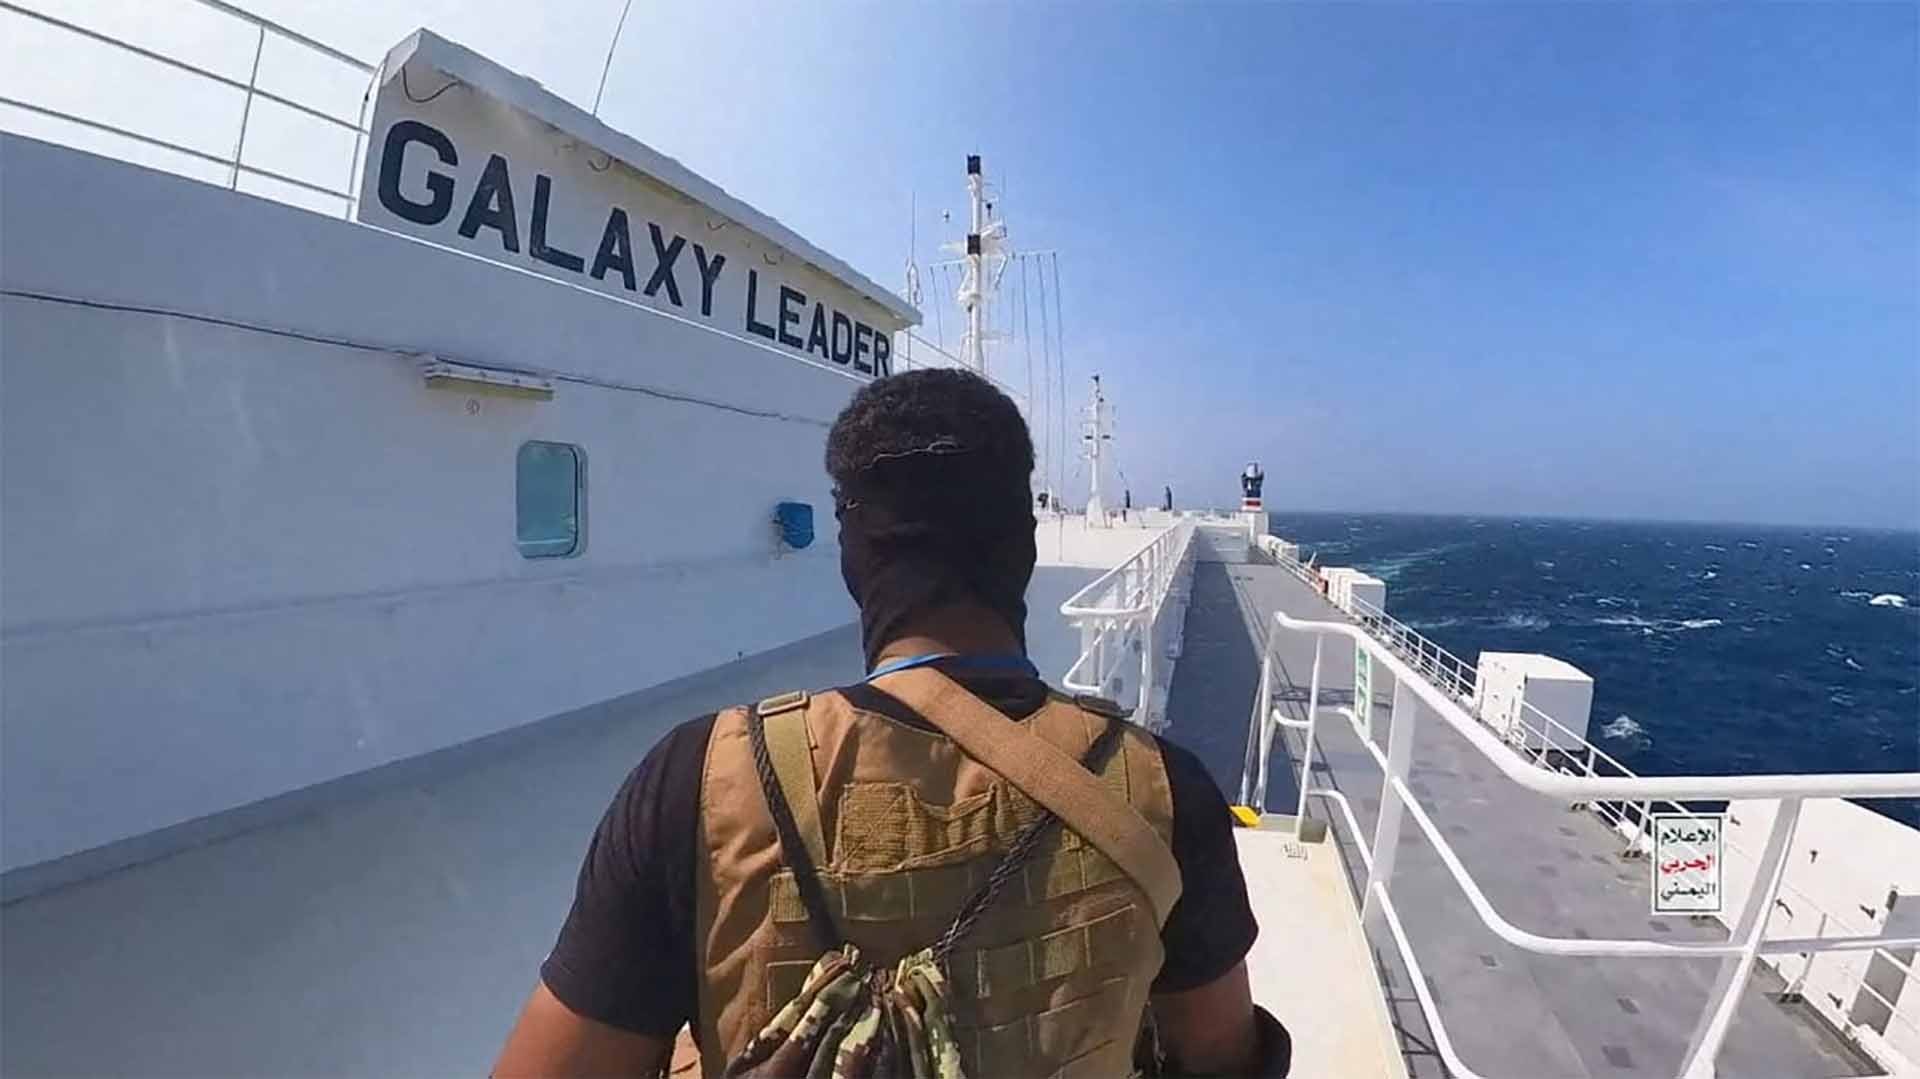 Vụ bắt giữ tàu hàng Galaxy Leader đã làm nóng Biển Đỏ trong gần hai tháng qua. (Nguồn: AP)